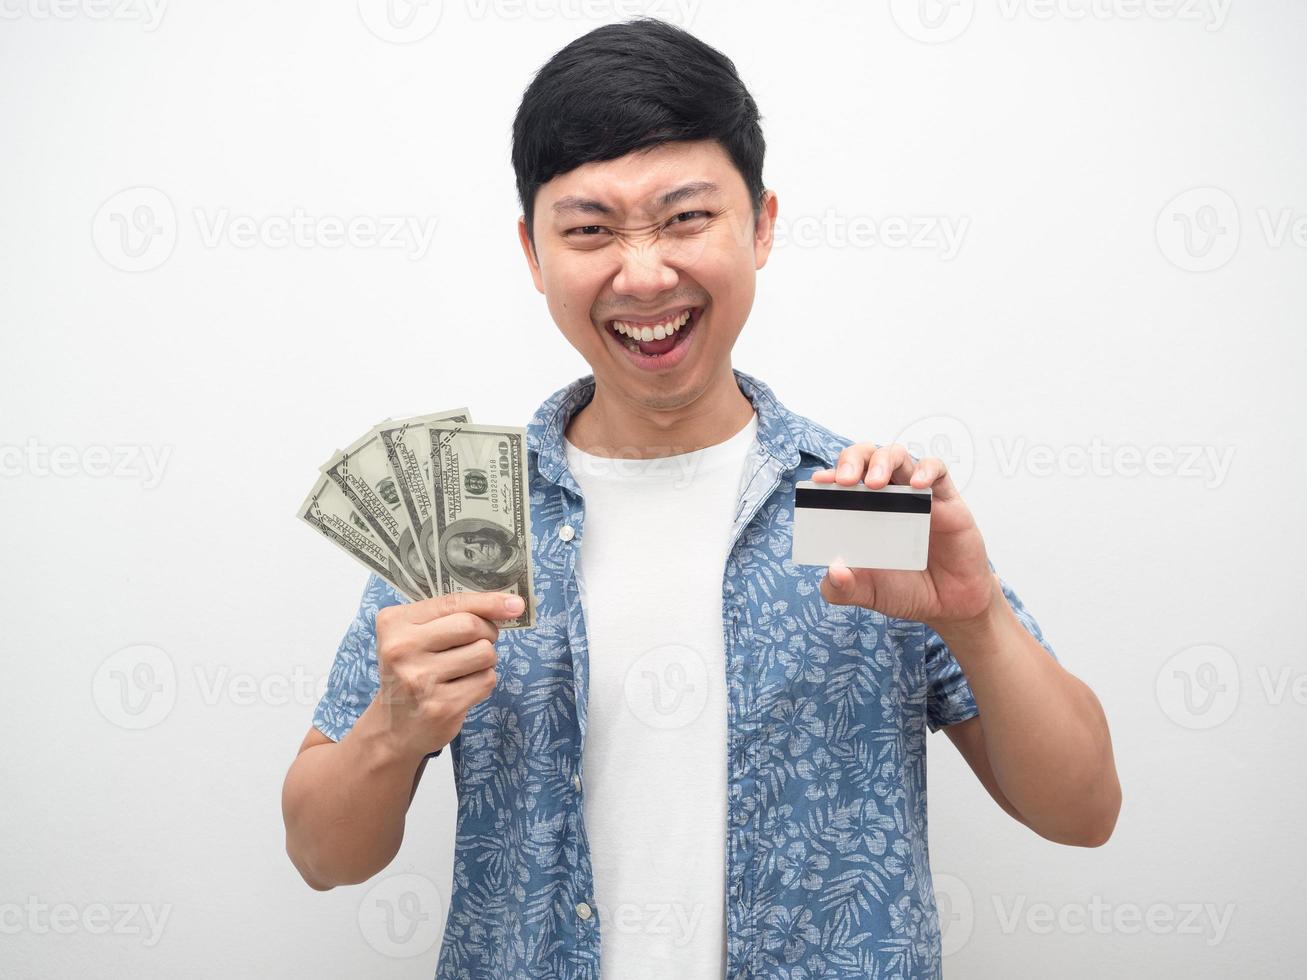 Mann zeigt Geld und Kreditkarte in der Hand lächelndes Gesicht fühlt sich glücklich foto